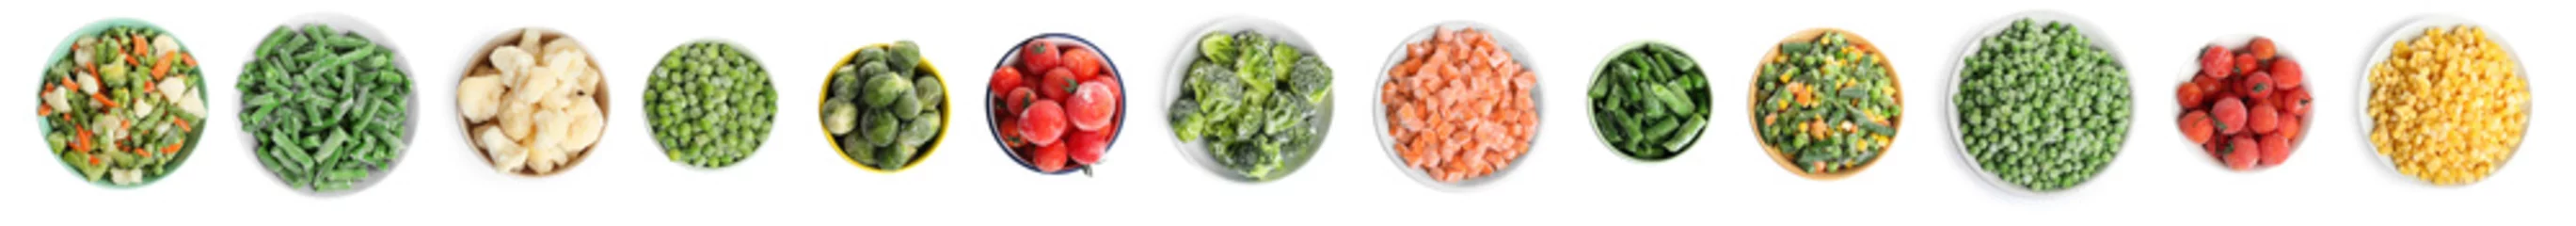 Muurstickers Verse groenten Set of different frozen vegetables on white background, top view. Banner design